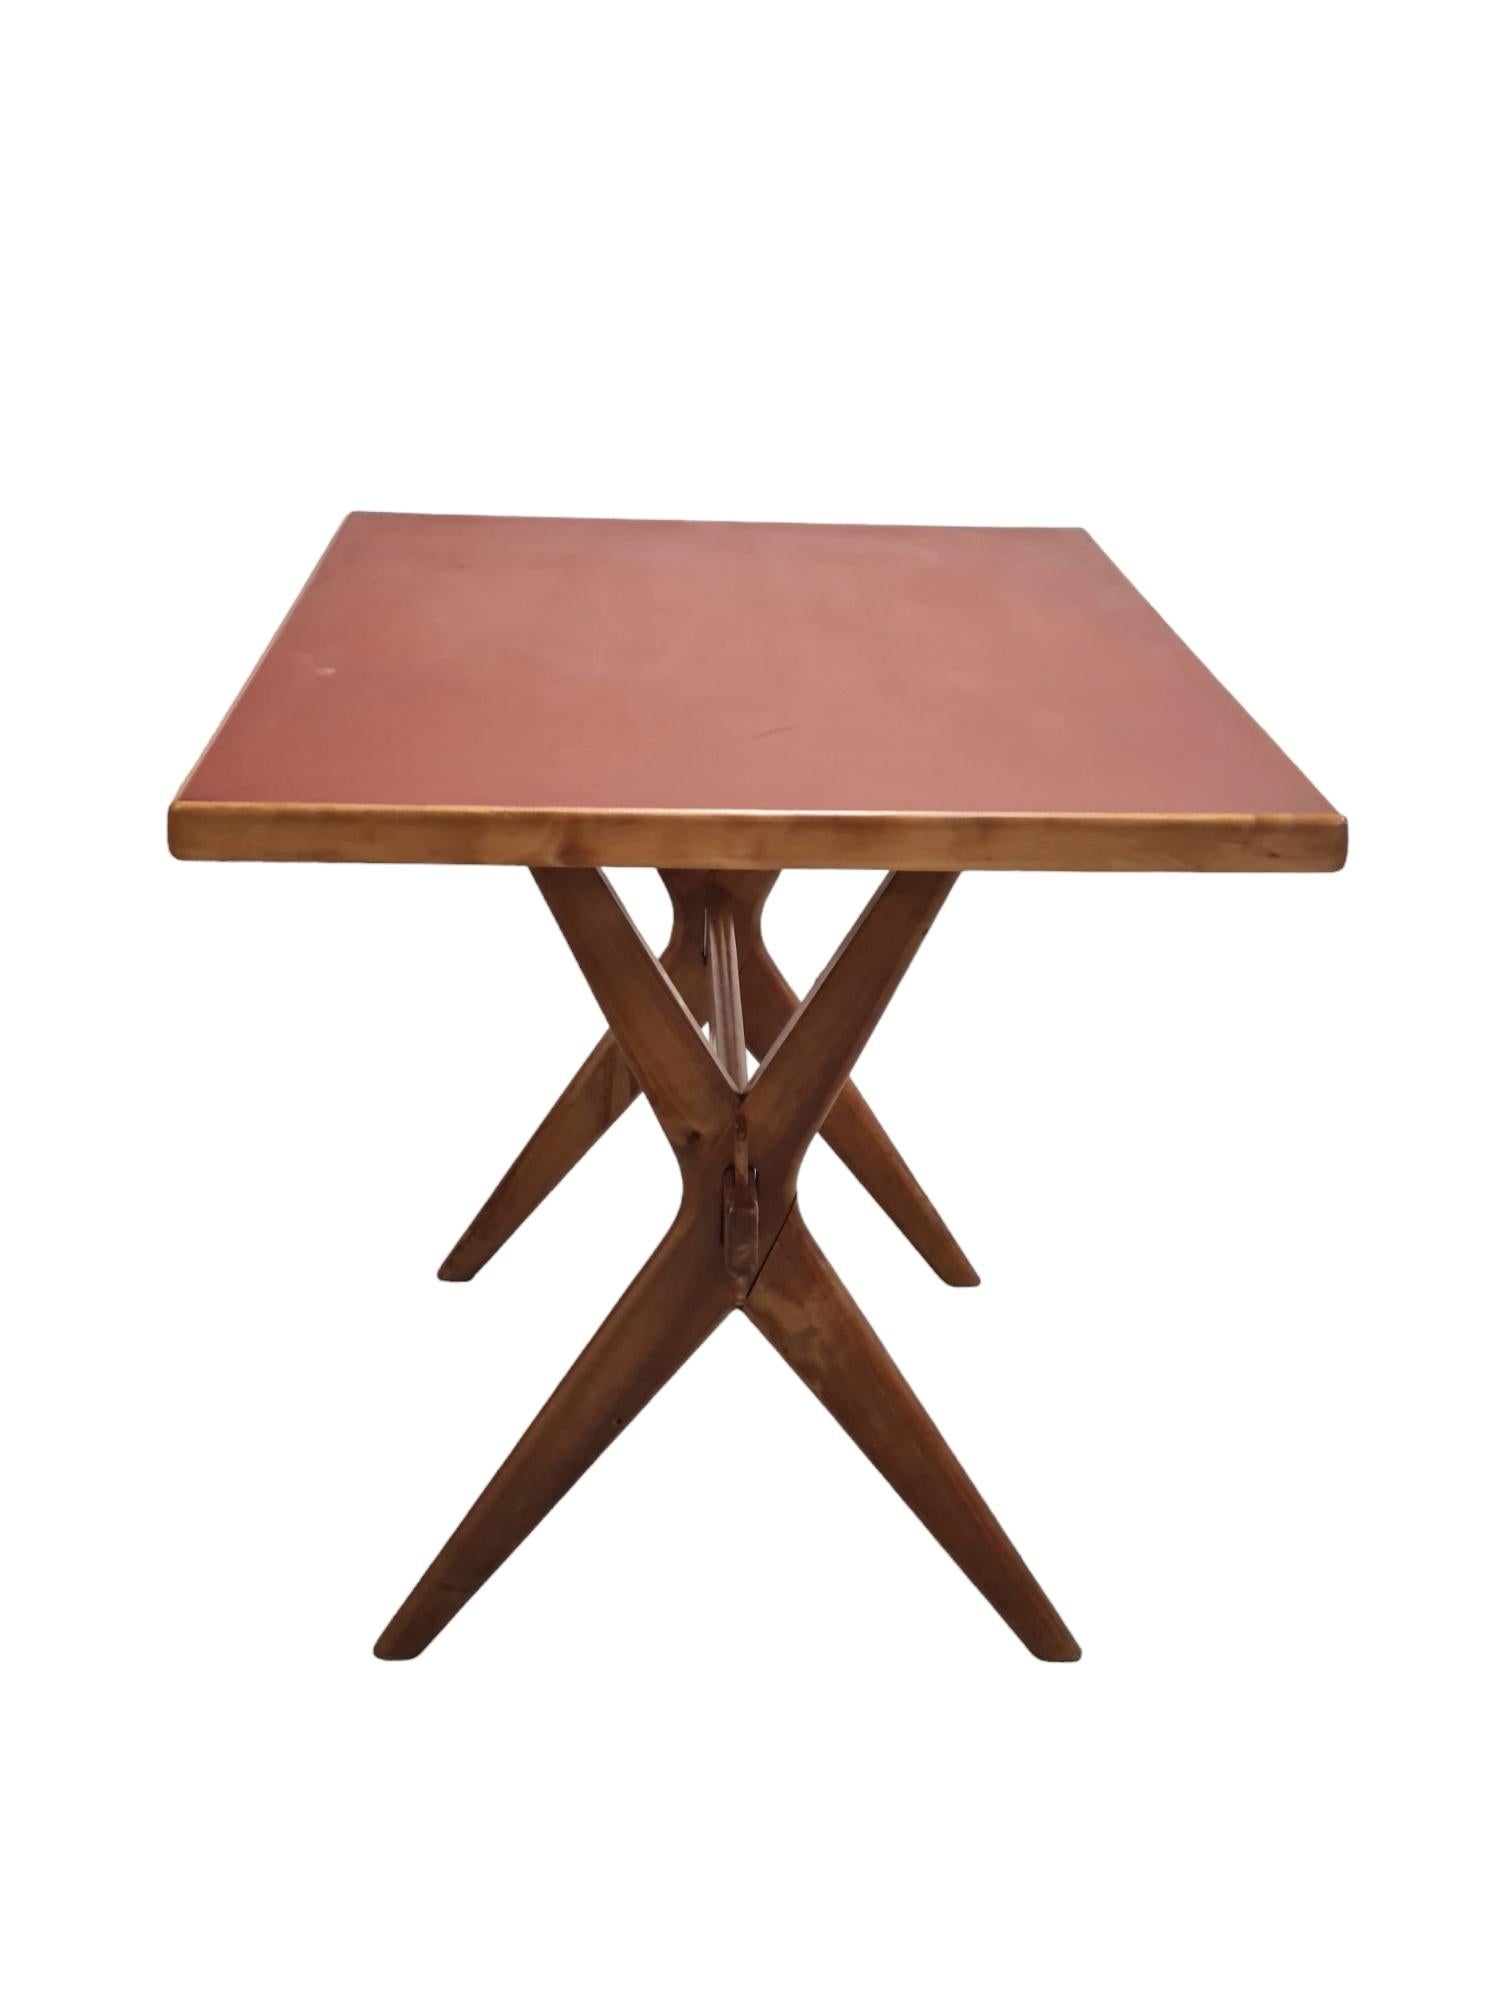 Mid-20th Century Ilmari Tapiovaara X-leg Easily Dismantable Table For Sale